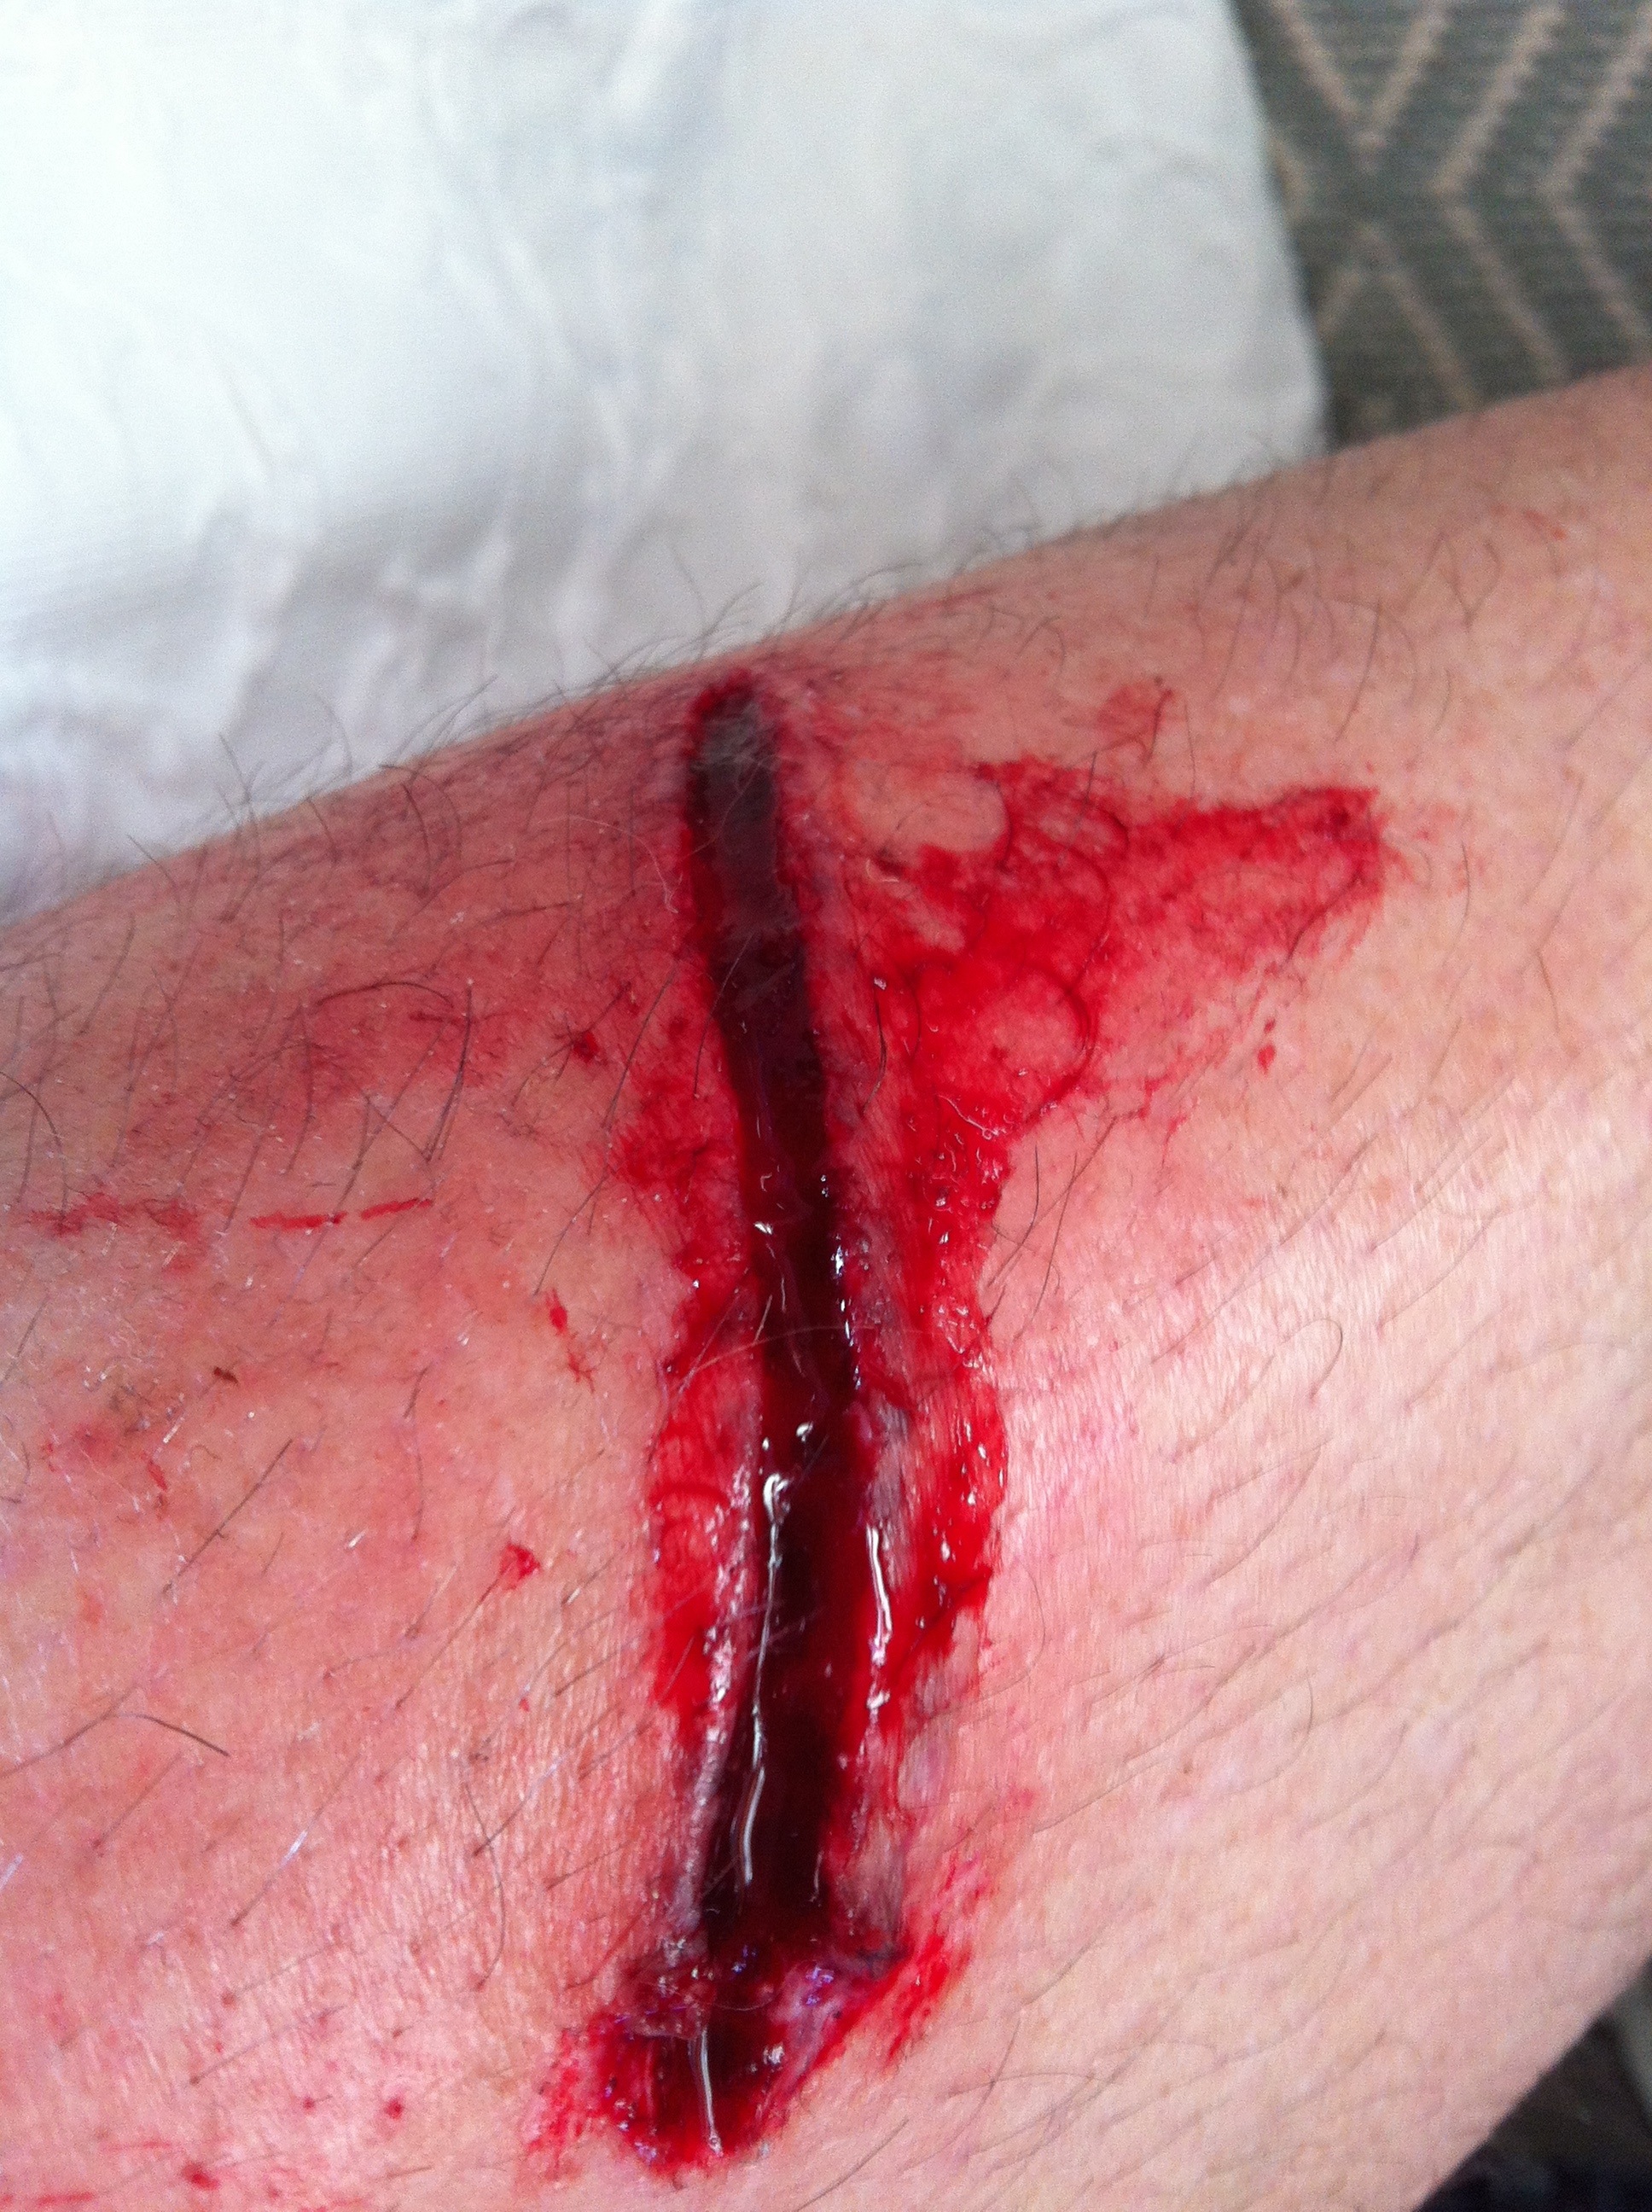 leg wound #10